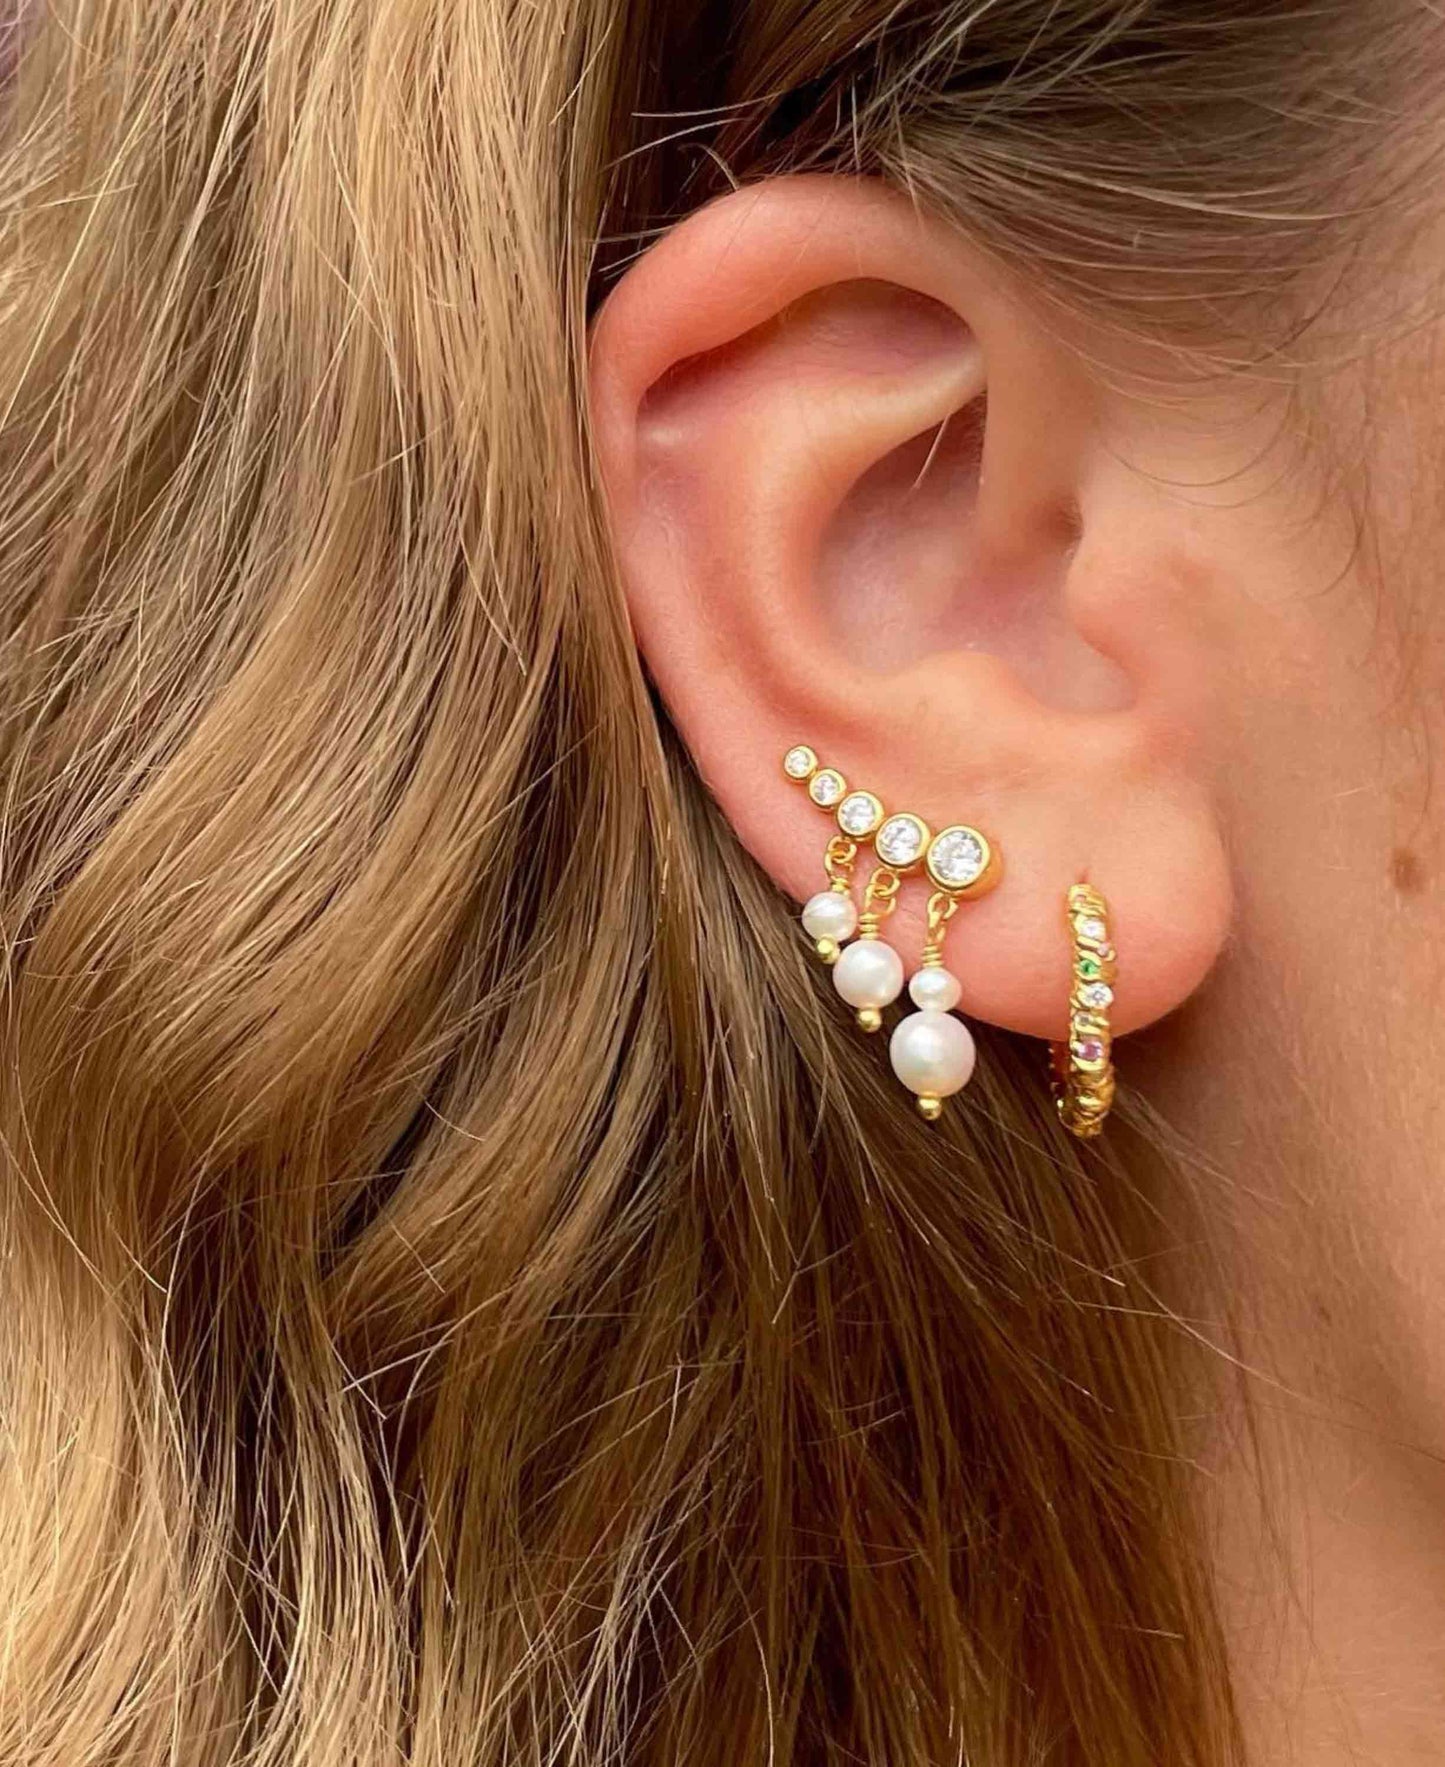 Molly earrings